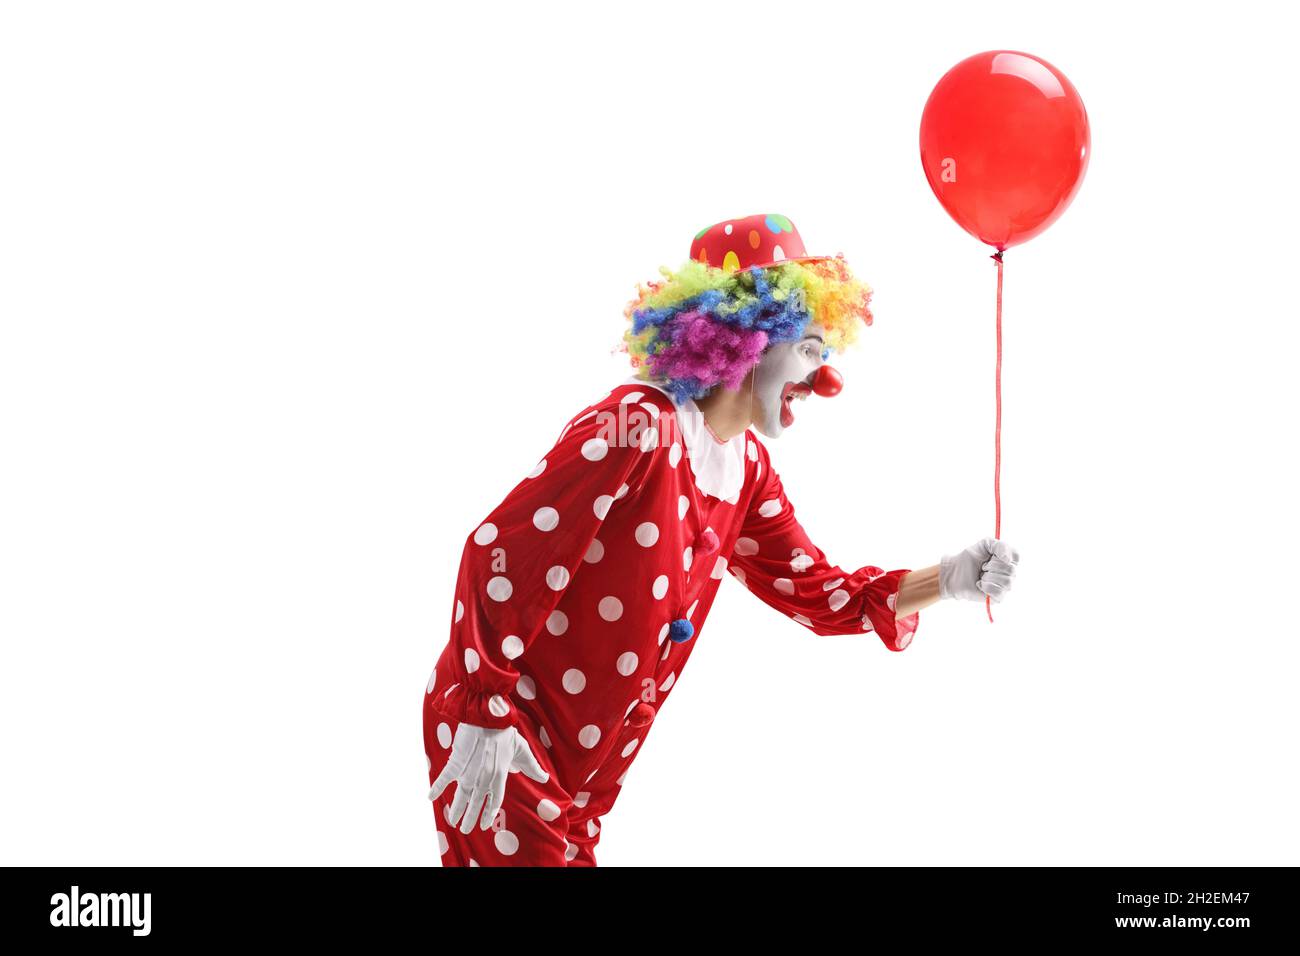 Plan de profil d'un clown donnant un ballon rouge isolé sur fond blanc Banque D'Images